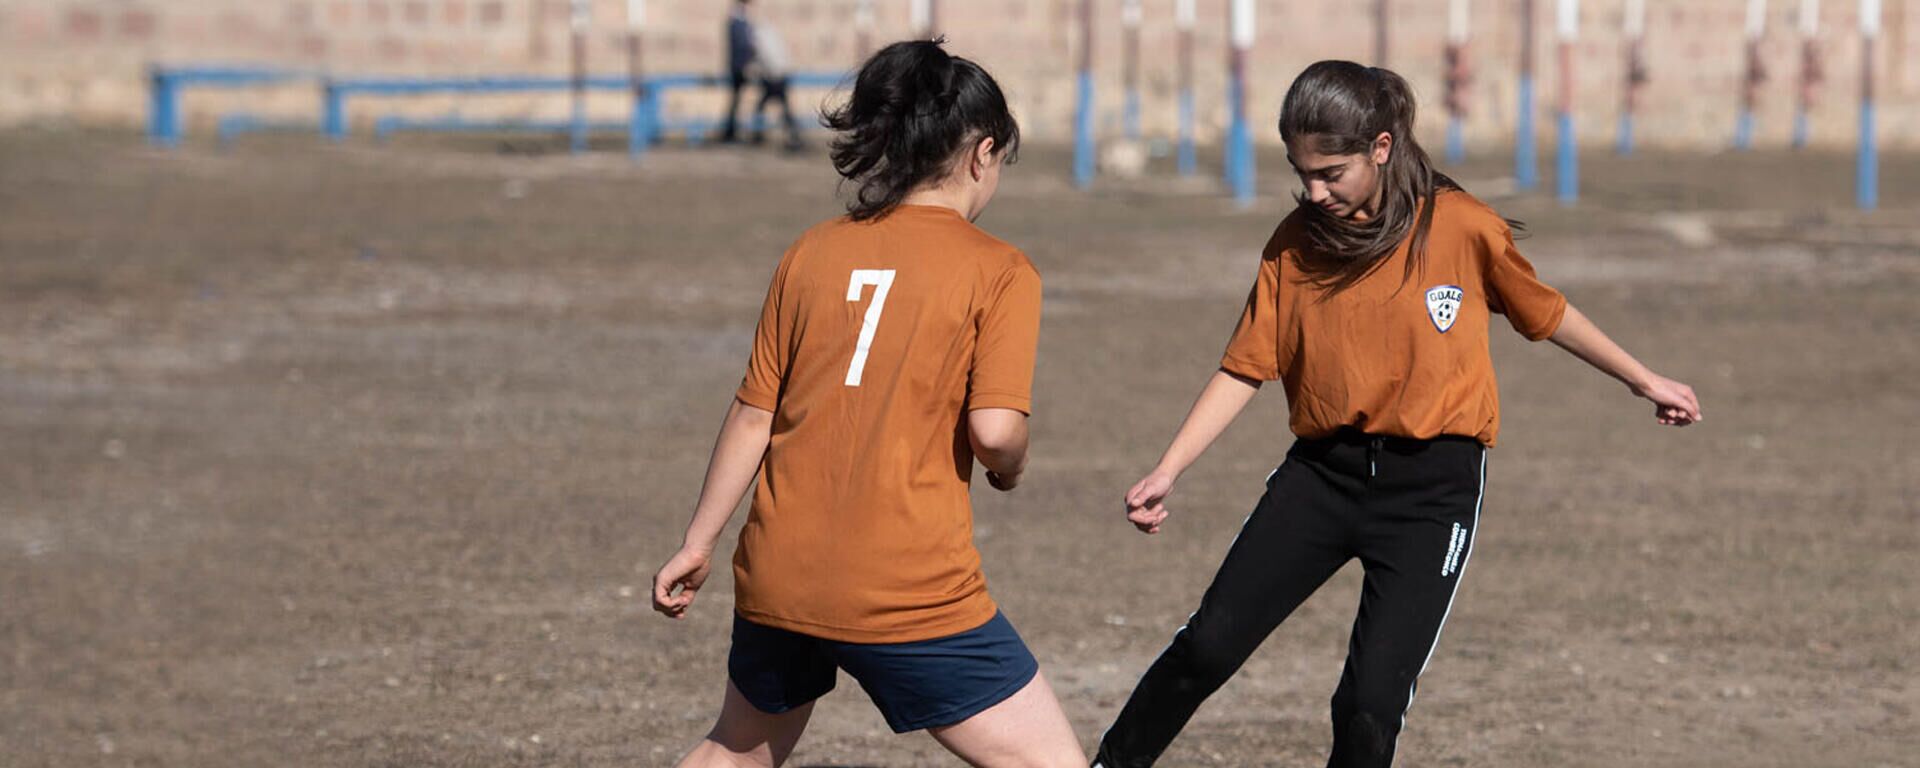 Անտեսելով քննադատությունները. ինչպես են Գավառում աղջիկները ֆուտբոլ խաղում - Sputnik Արմենիա, 1920, 27.11.2021